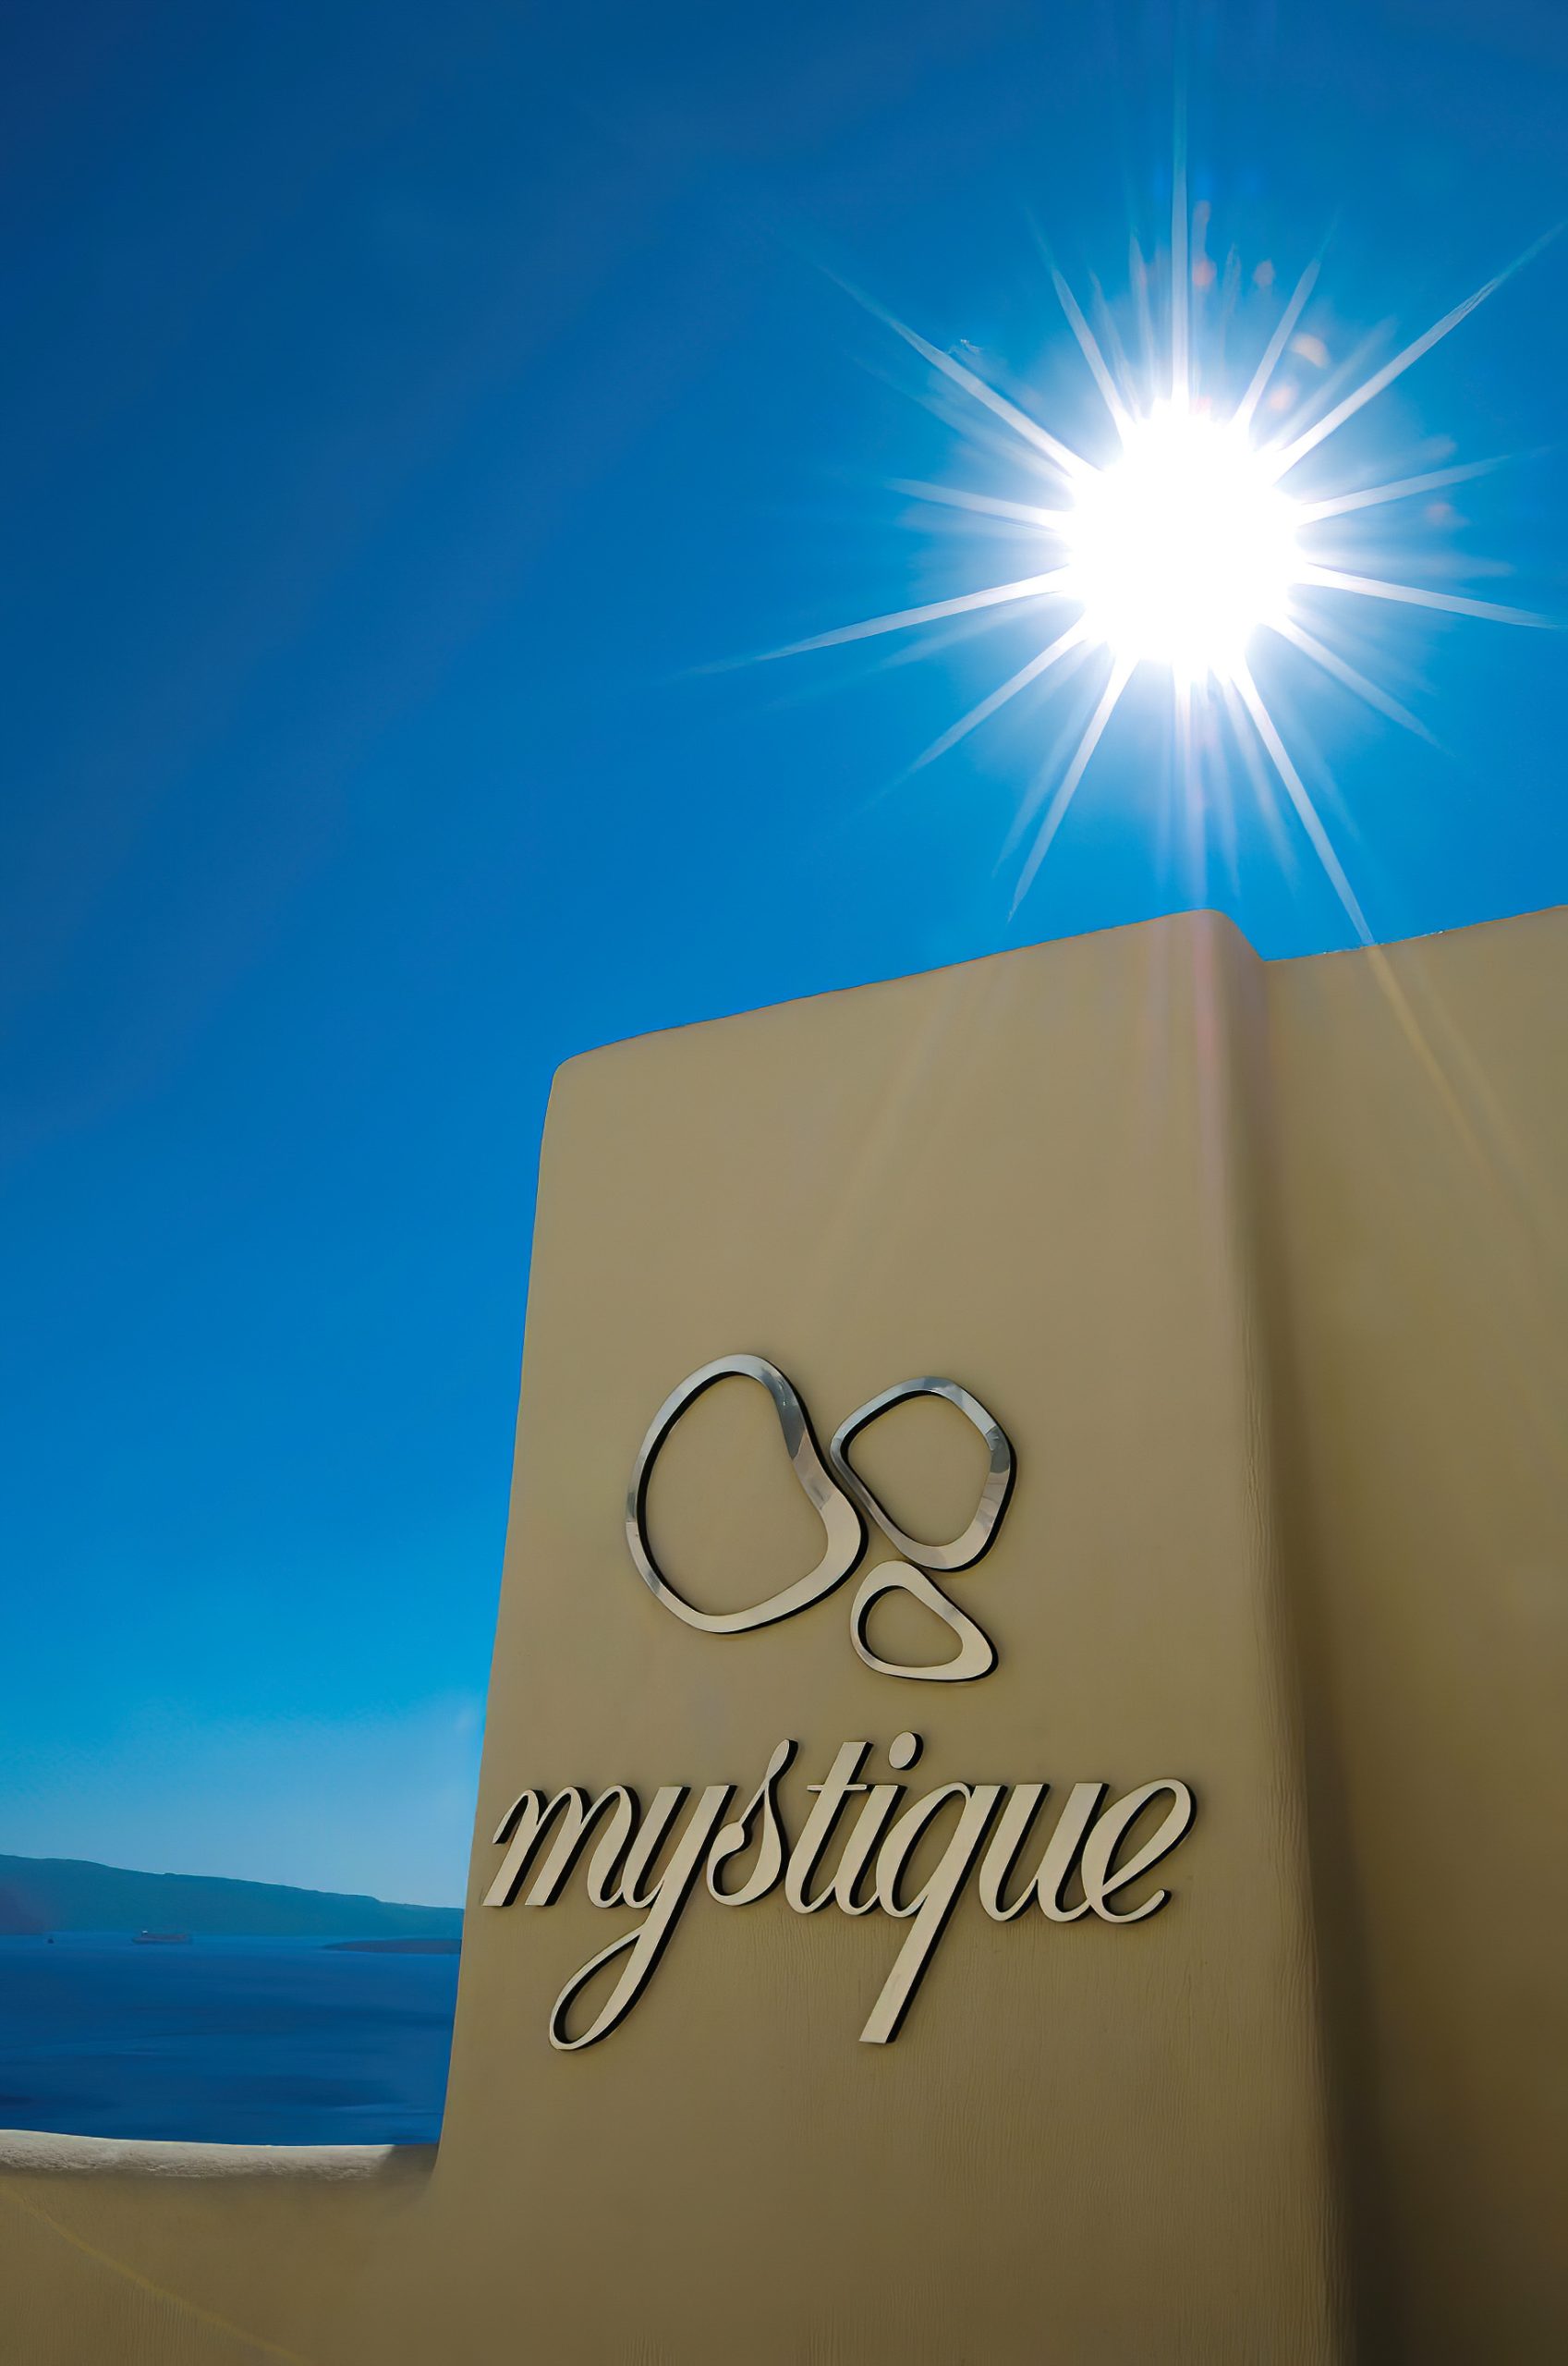 Mystique Hotel Santorini – Oia, Santorini Island, Greece - Mystique Sign